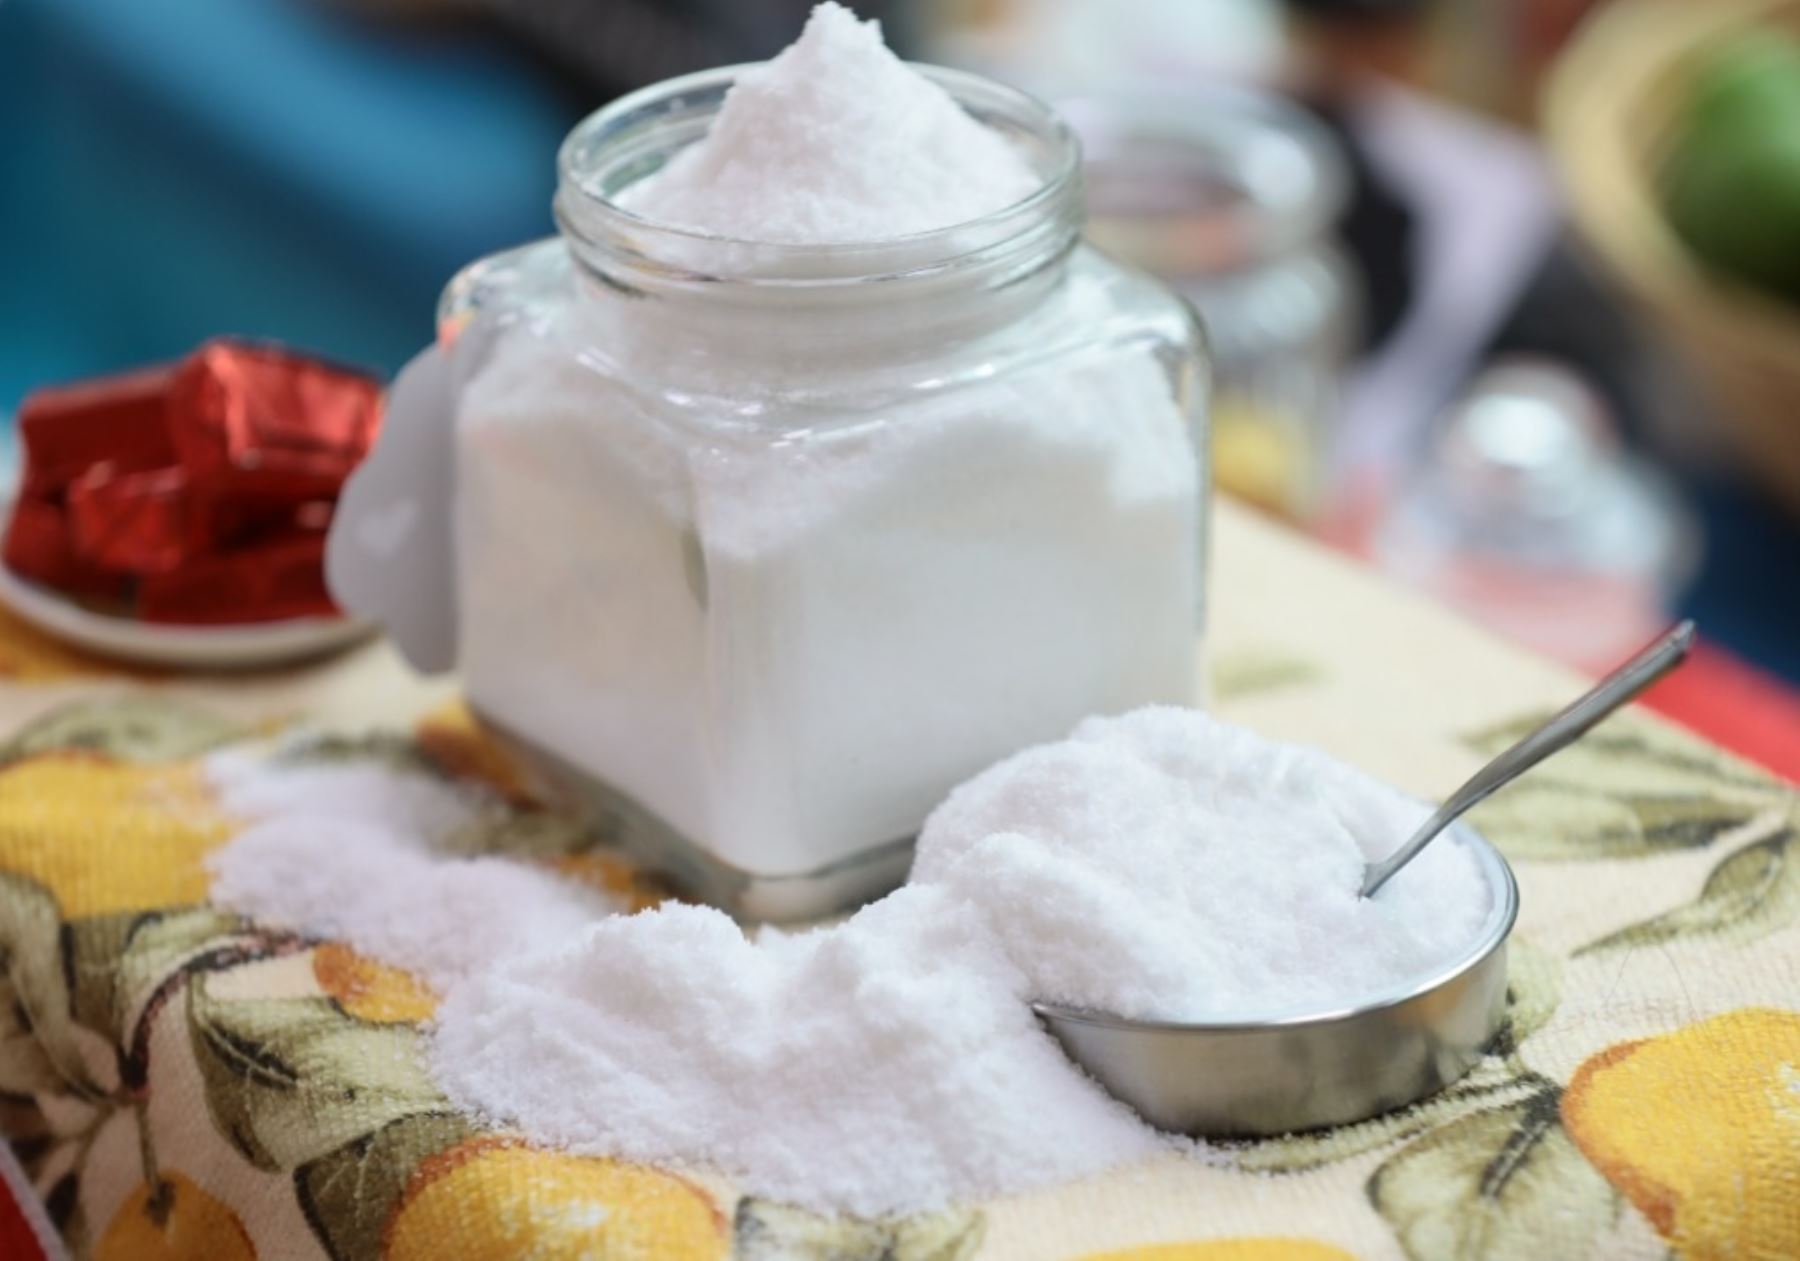 Exceso de sal en las comidas es factor de riesgo de enfermedad renal, señalan especialistas.